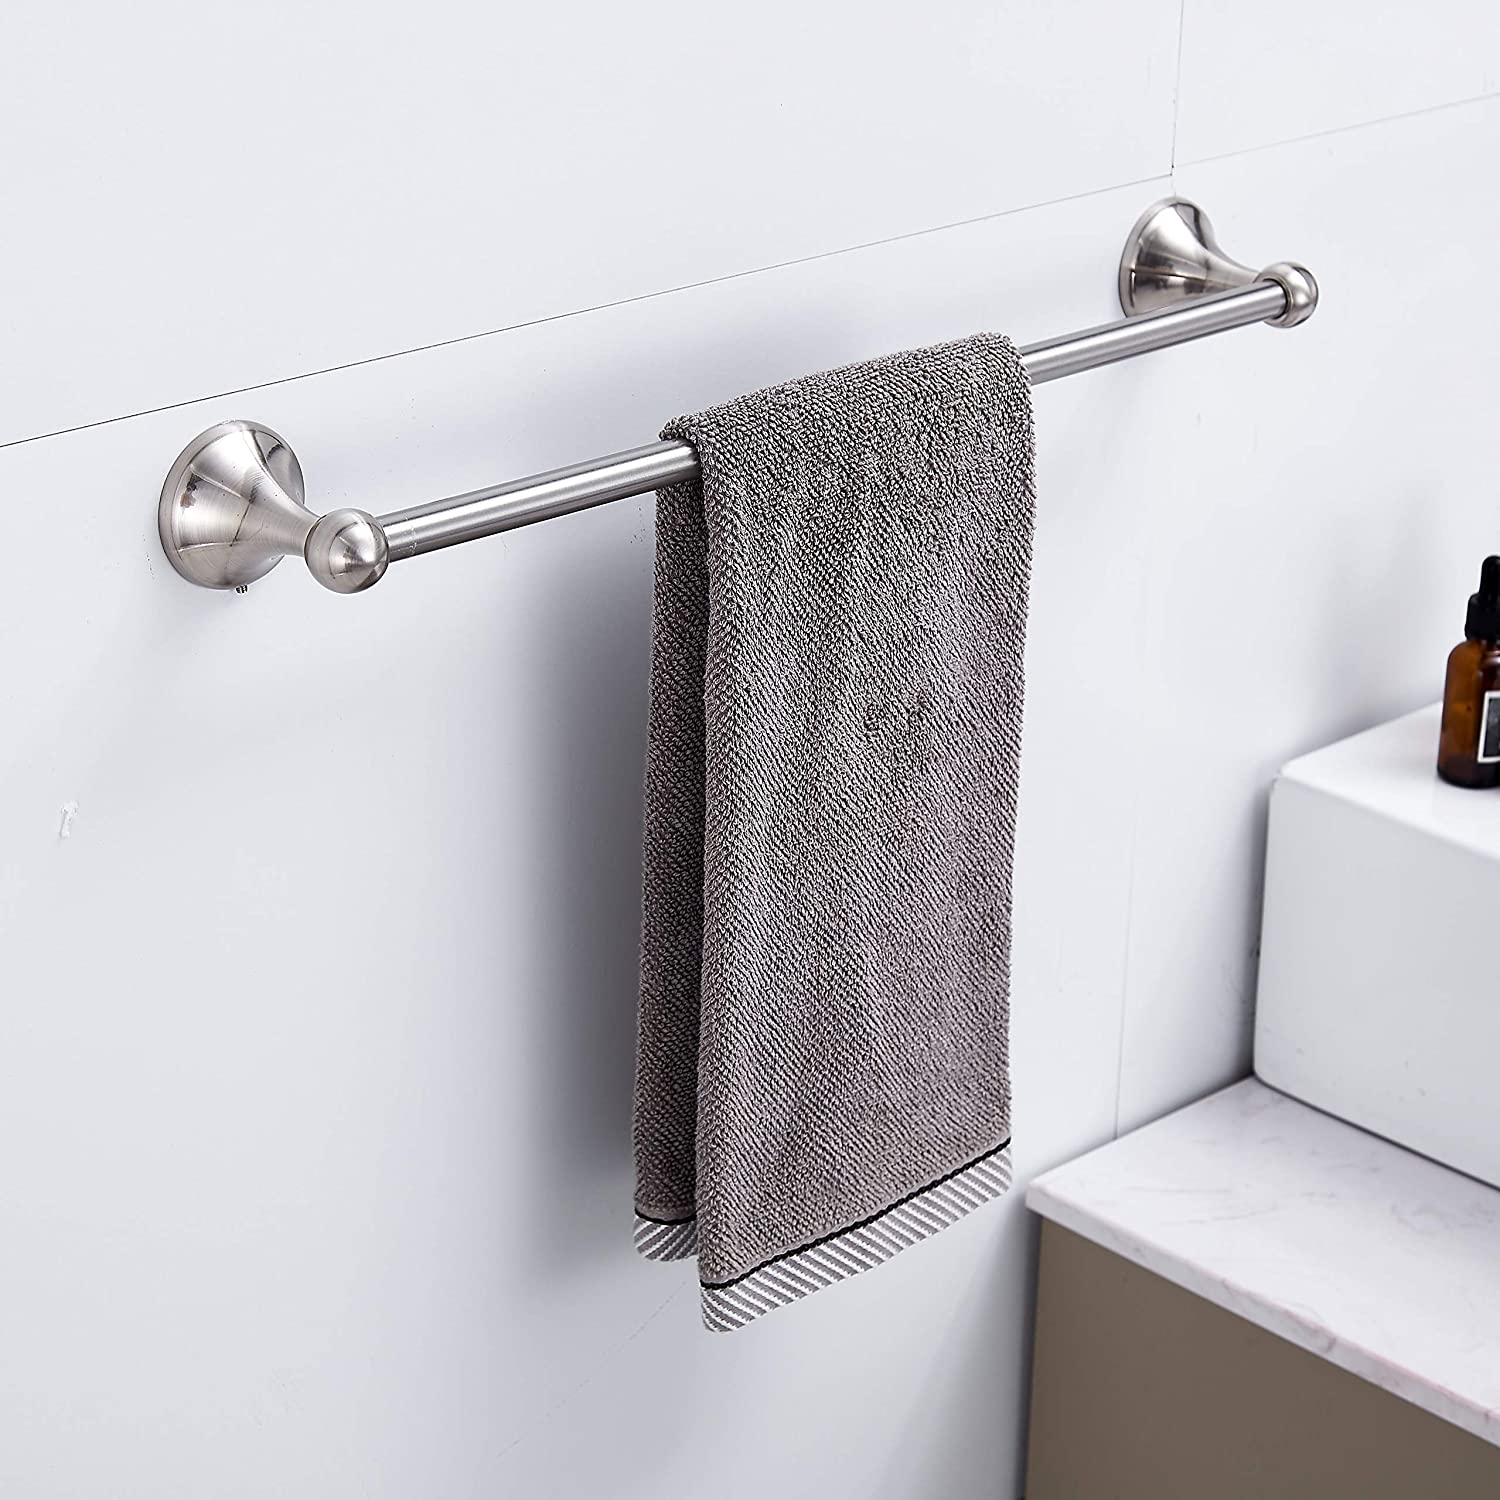 BGL 4-Piece Bathroom Accessory Set Brushed Nickel Bathroom Hardware Se –  BGL BATH OFFICAL STORE